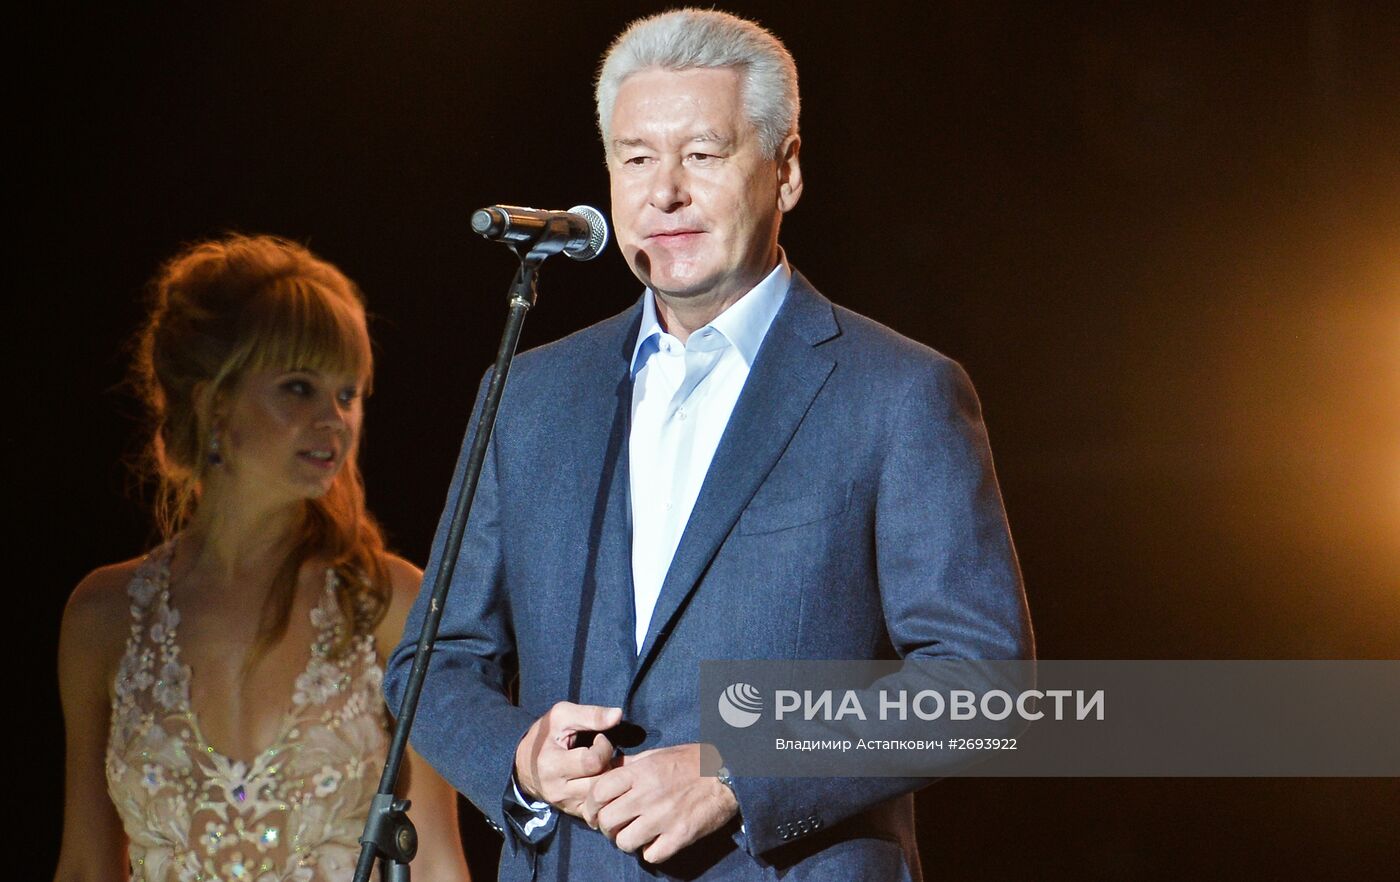 Концерт, посвященный Дню города в Москве